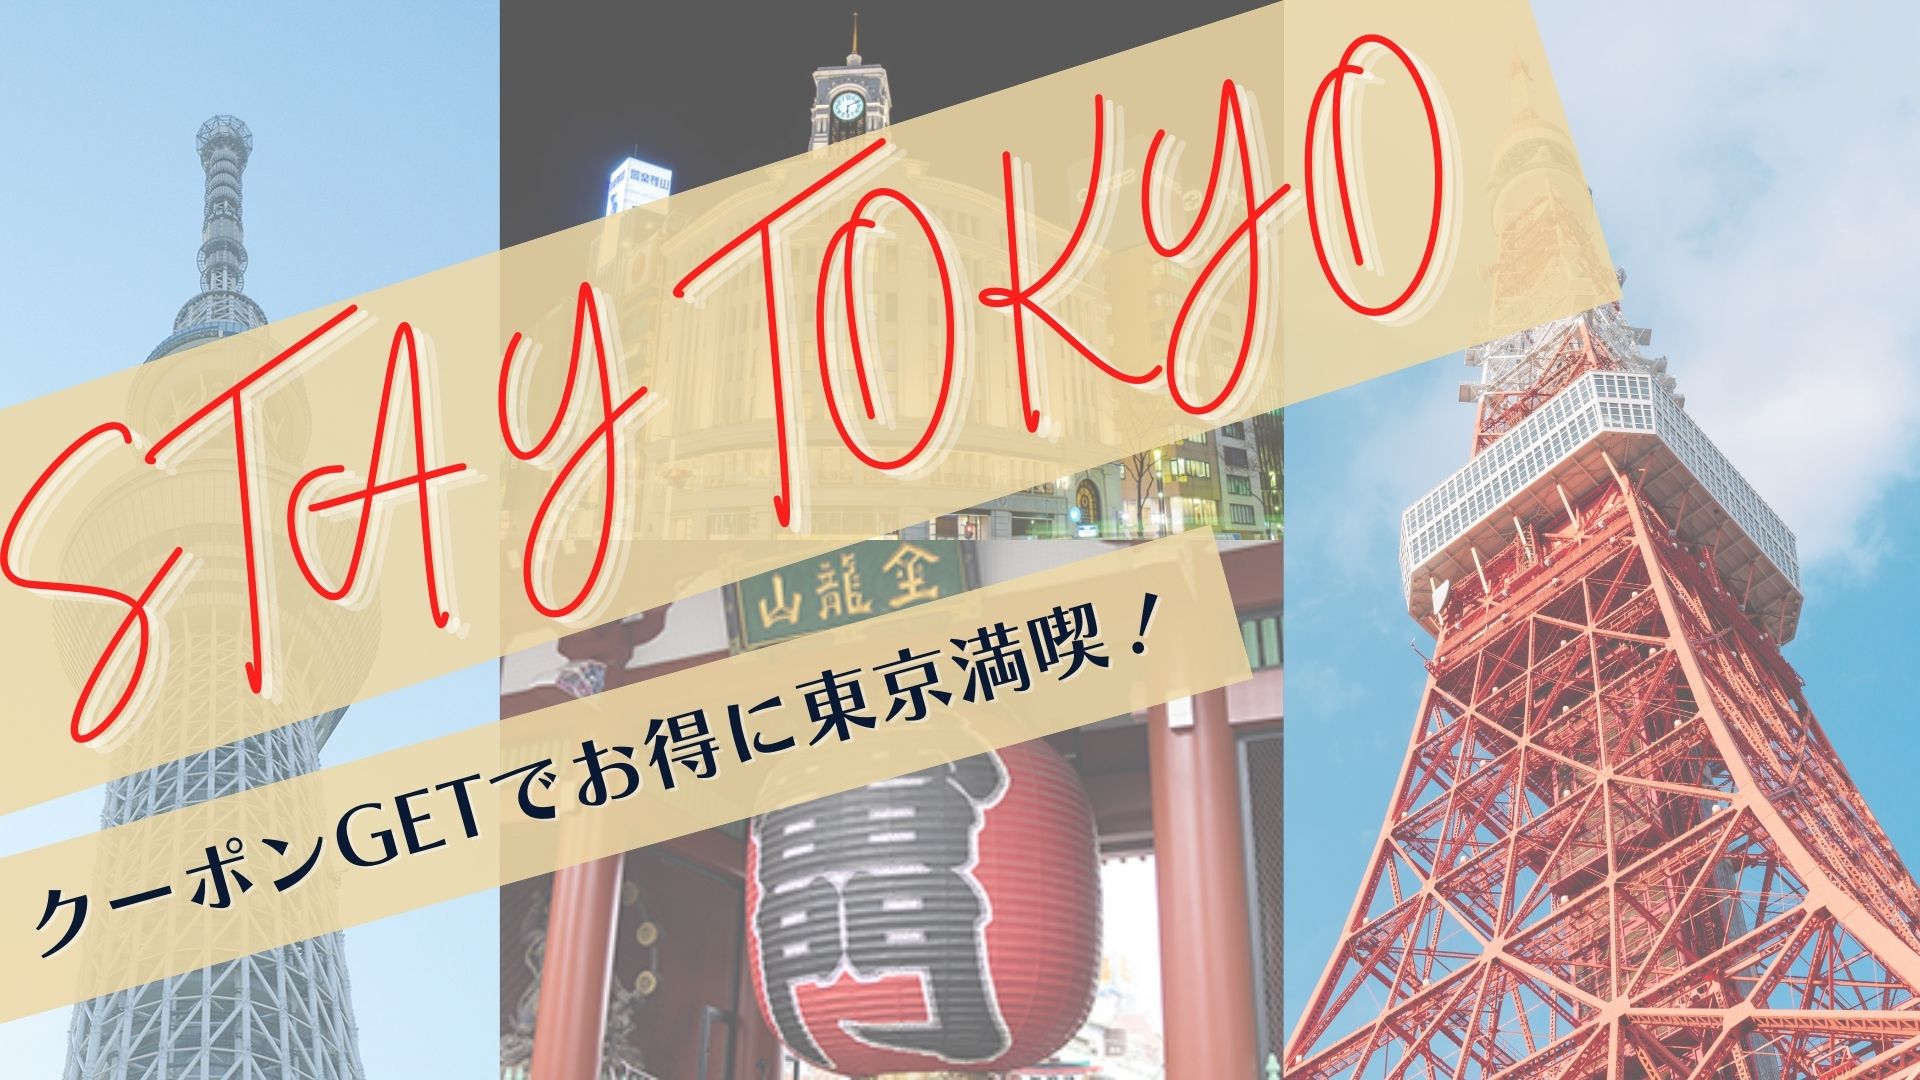 【公式会員様限定】Stay Tokyo キャンペーン開始のお知らせ